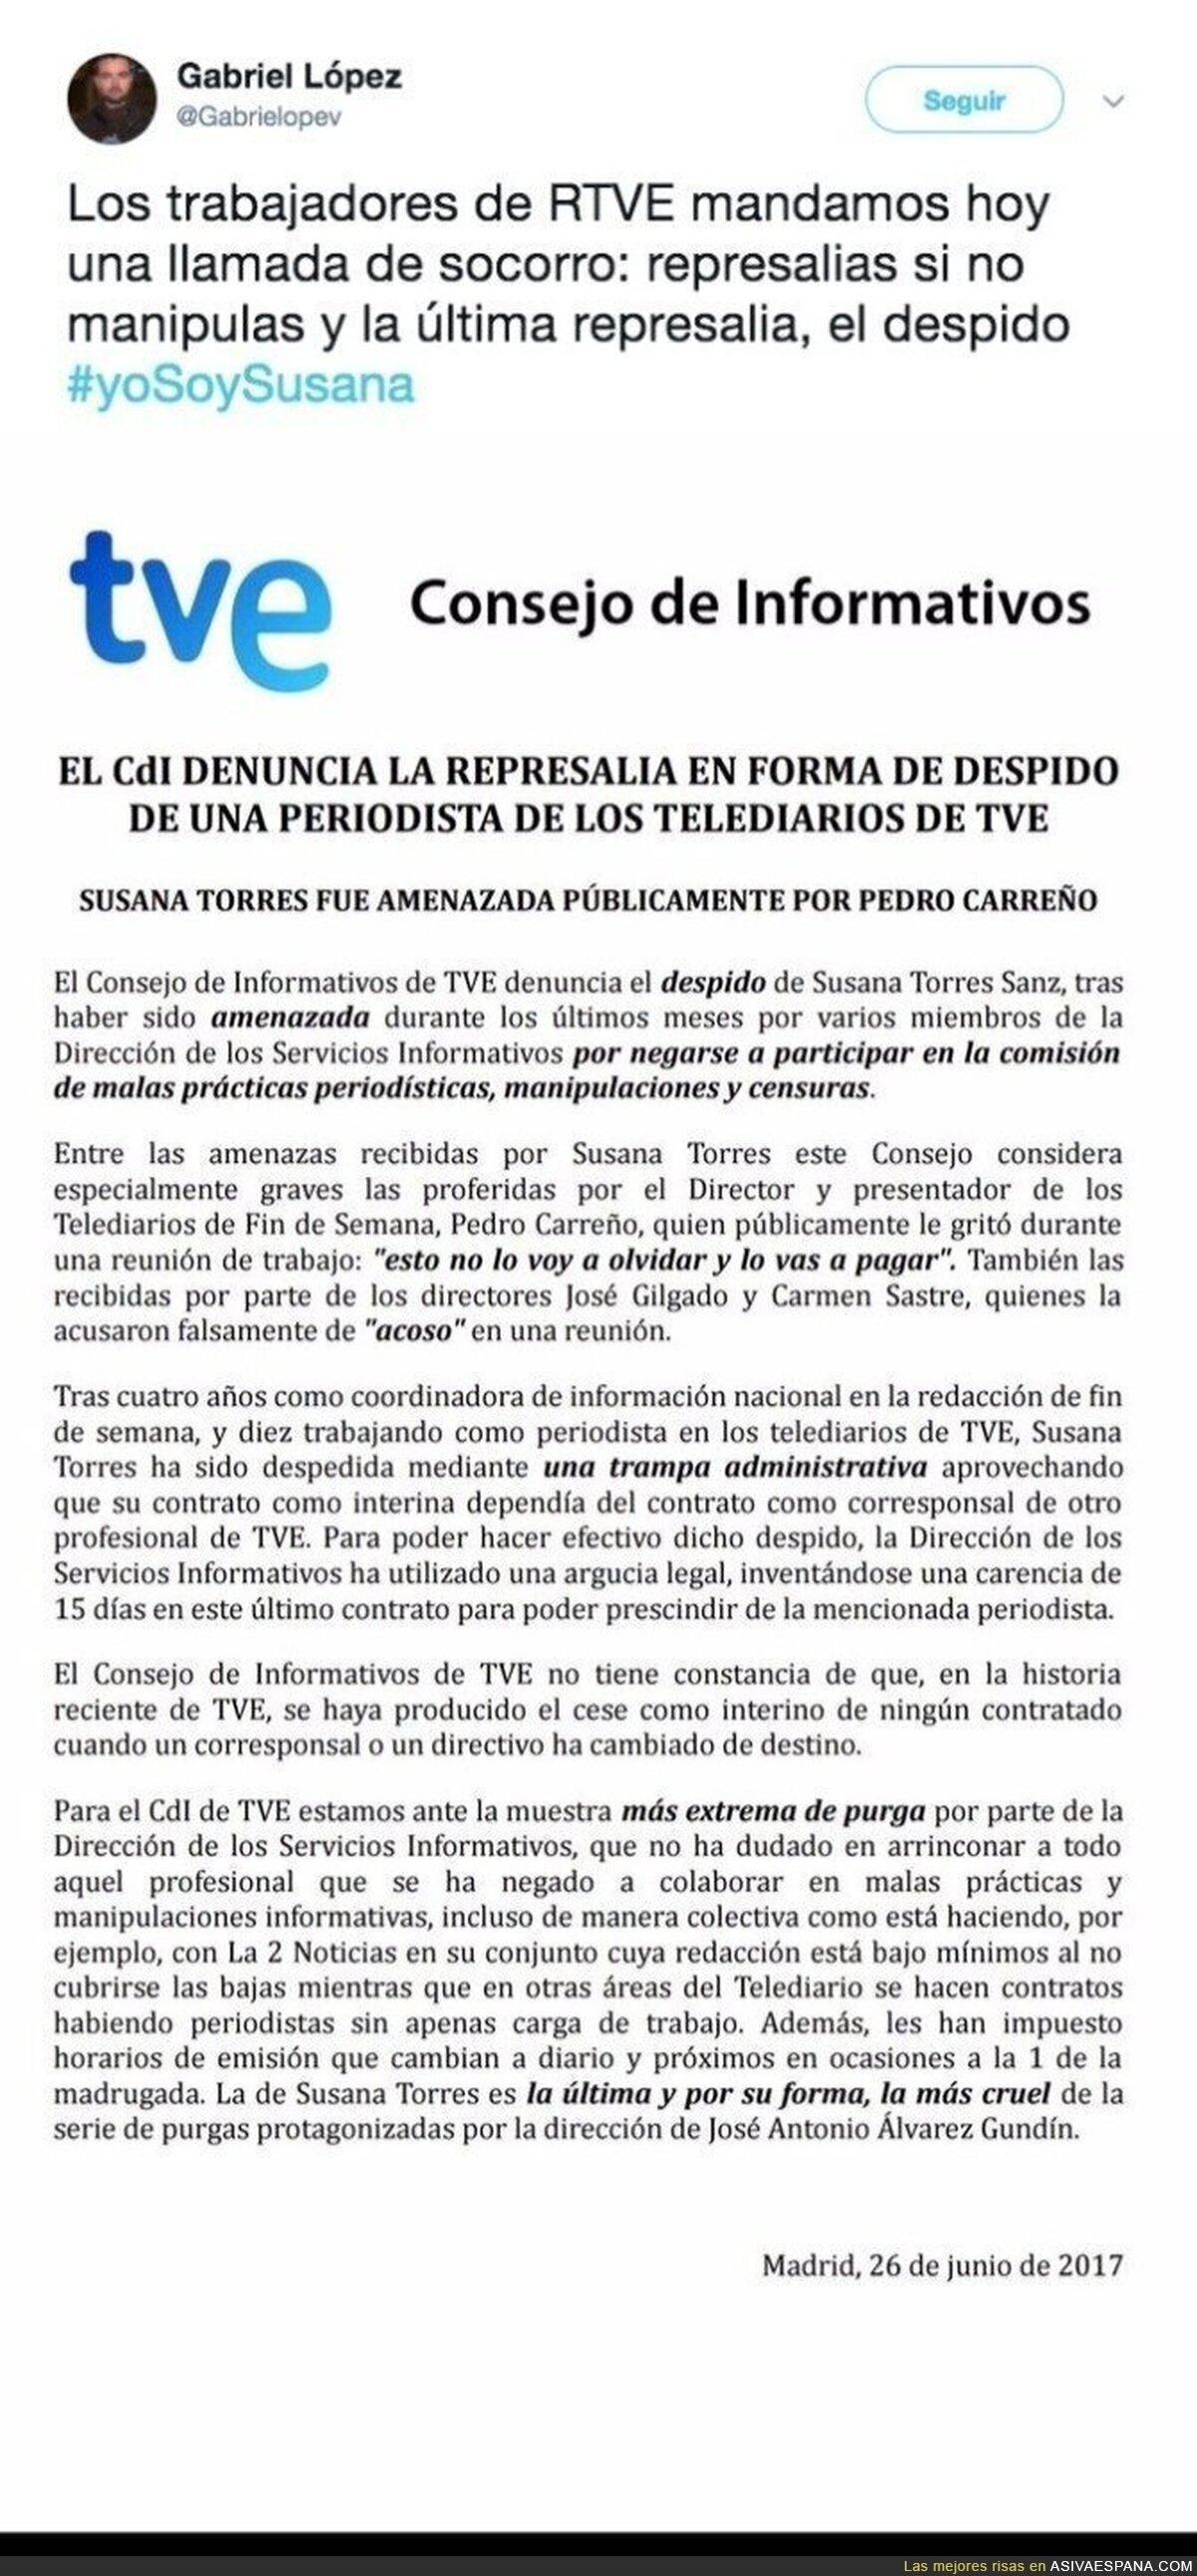 La carta con la que los trabajadores de RTVE denuncian las represalias y la manipulación que sufren